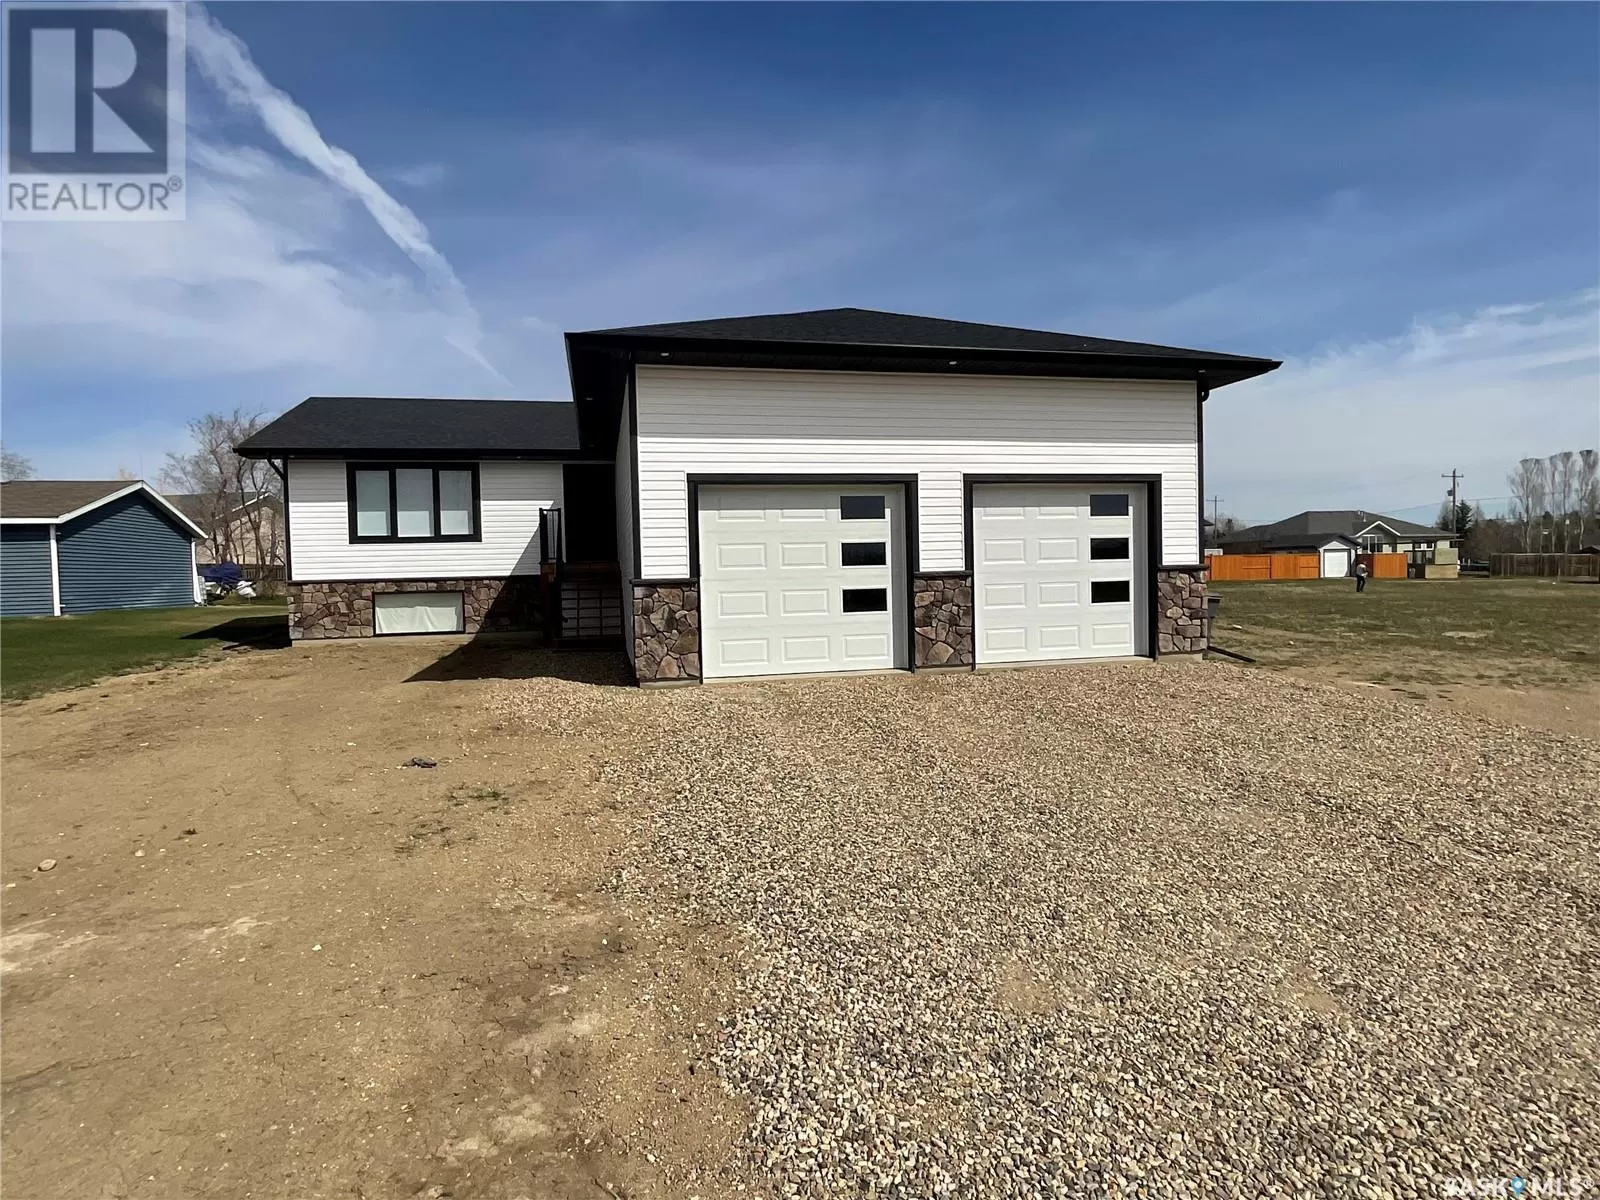 House for rent: 209 Willow Crescent, Waldheim, Saskatchewan S0K 4R0